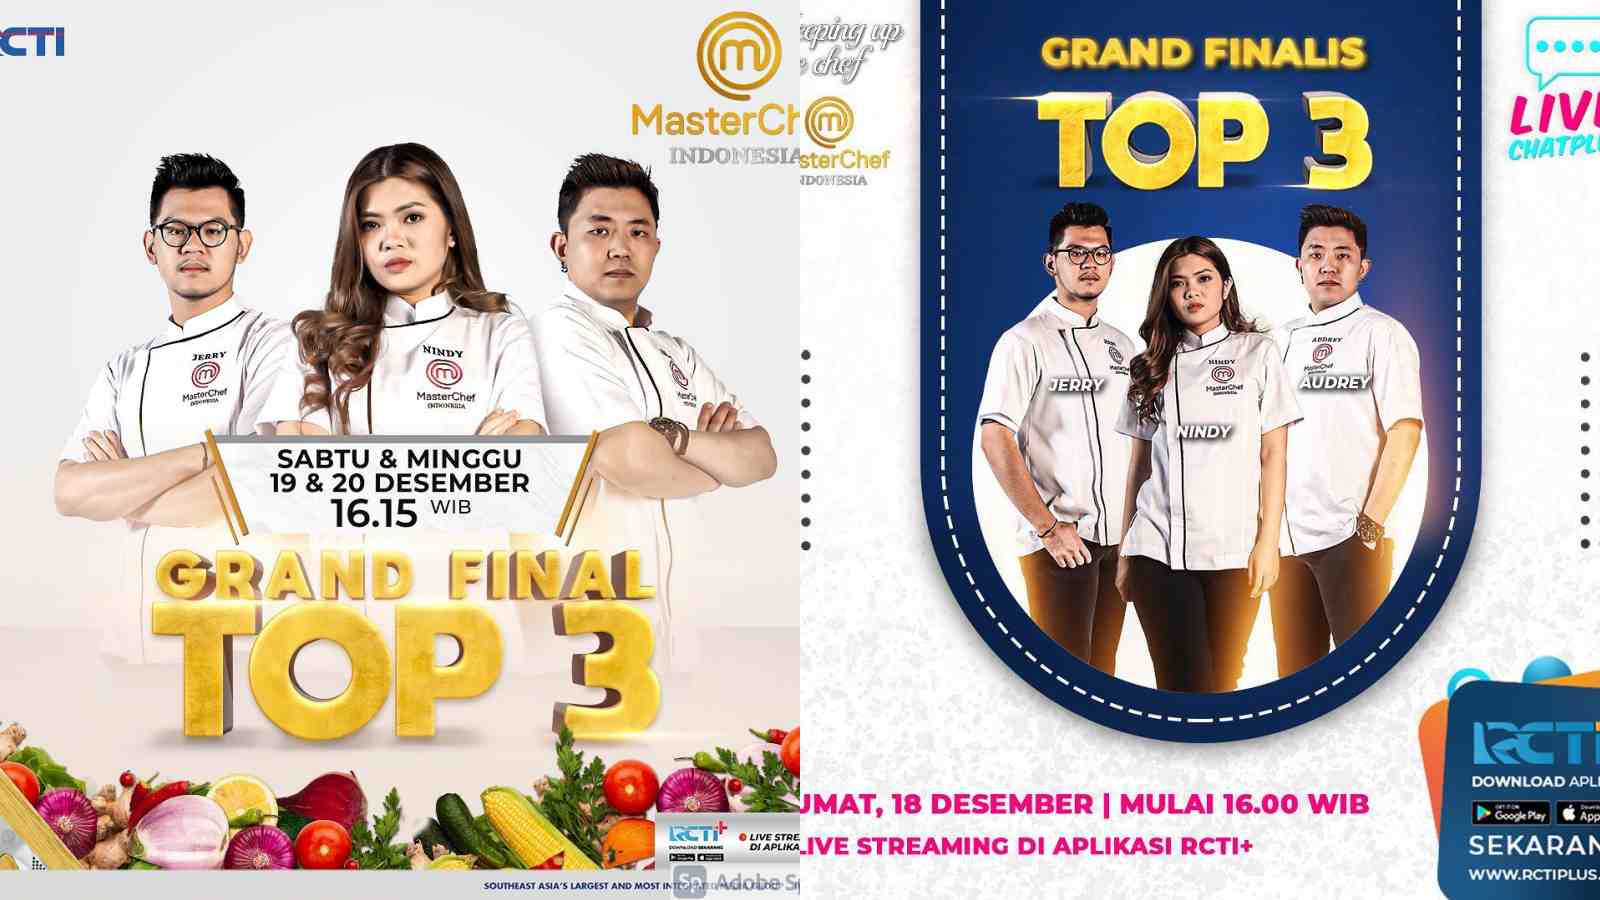 Ini Top 2 Masterchef Indonesia 2020, Jadi Grand Final Top 3 Gaes